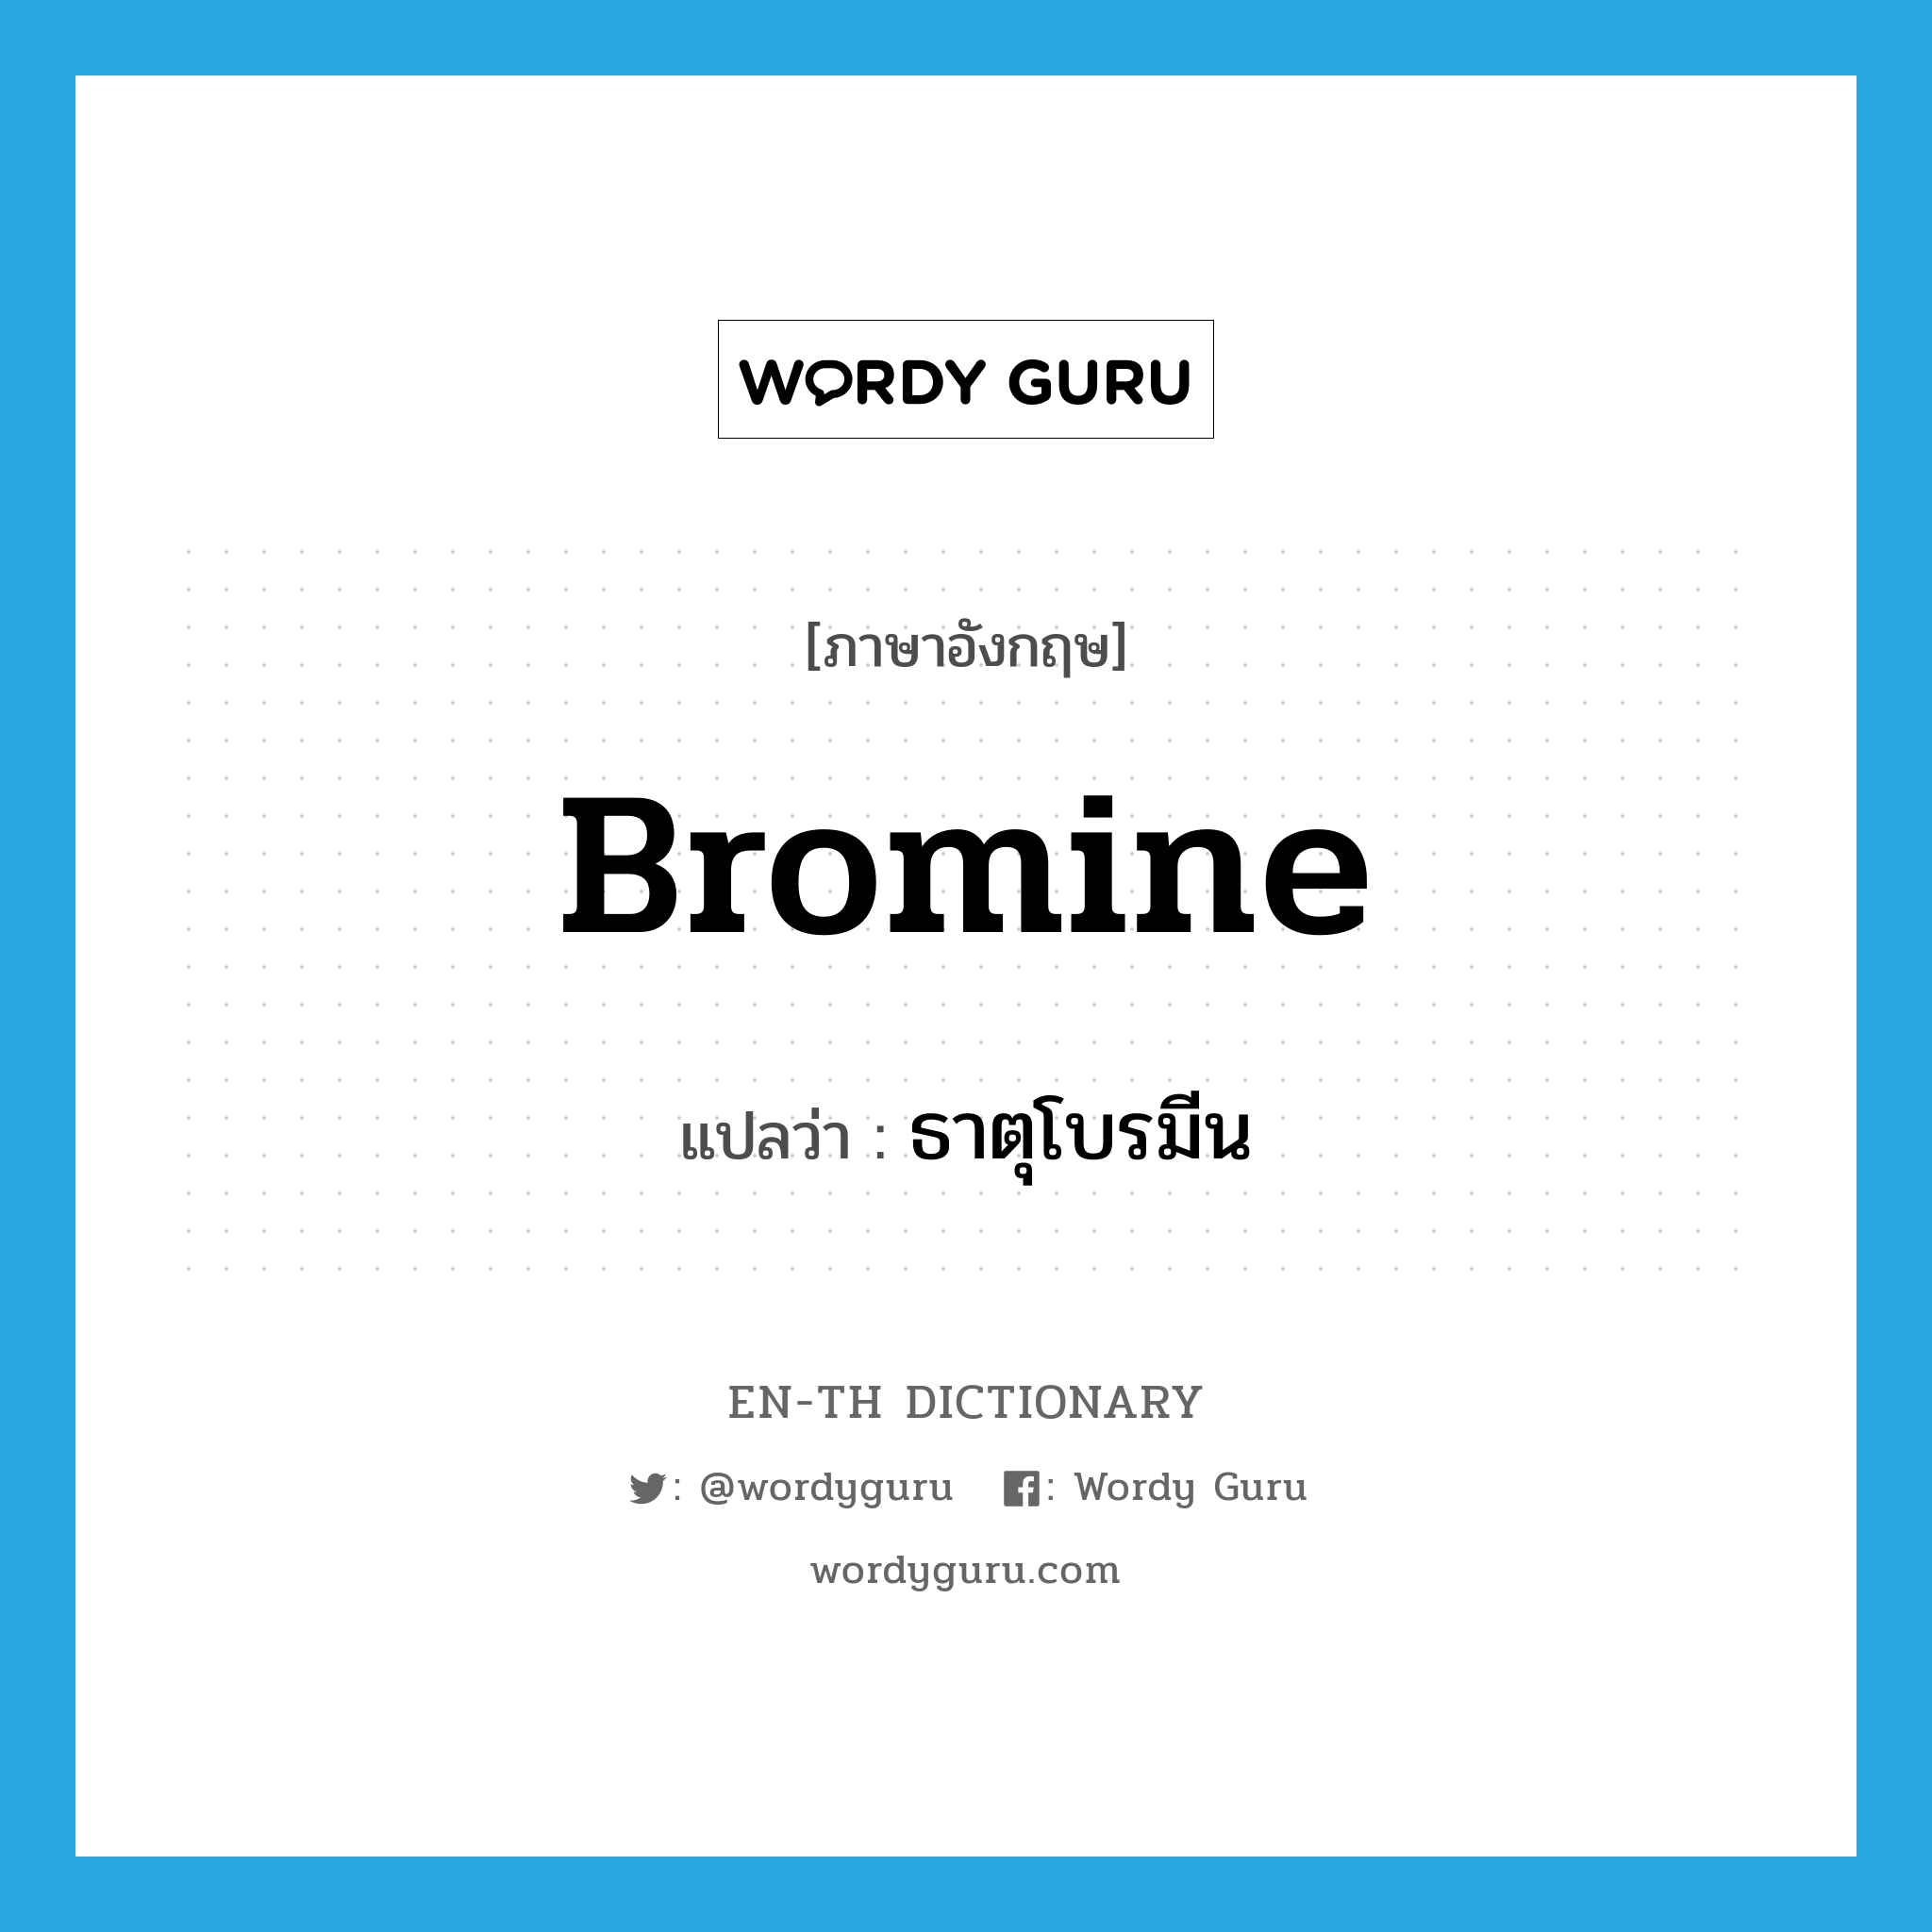 bromine แปลว่า?, คำศัพท์ภาษาอังกฤษ bromine แปลว่า ธาตุโบรมีน ประเภท N หมวด N